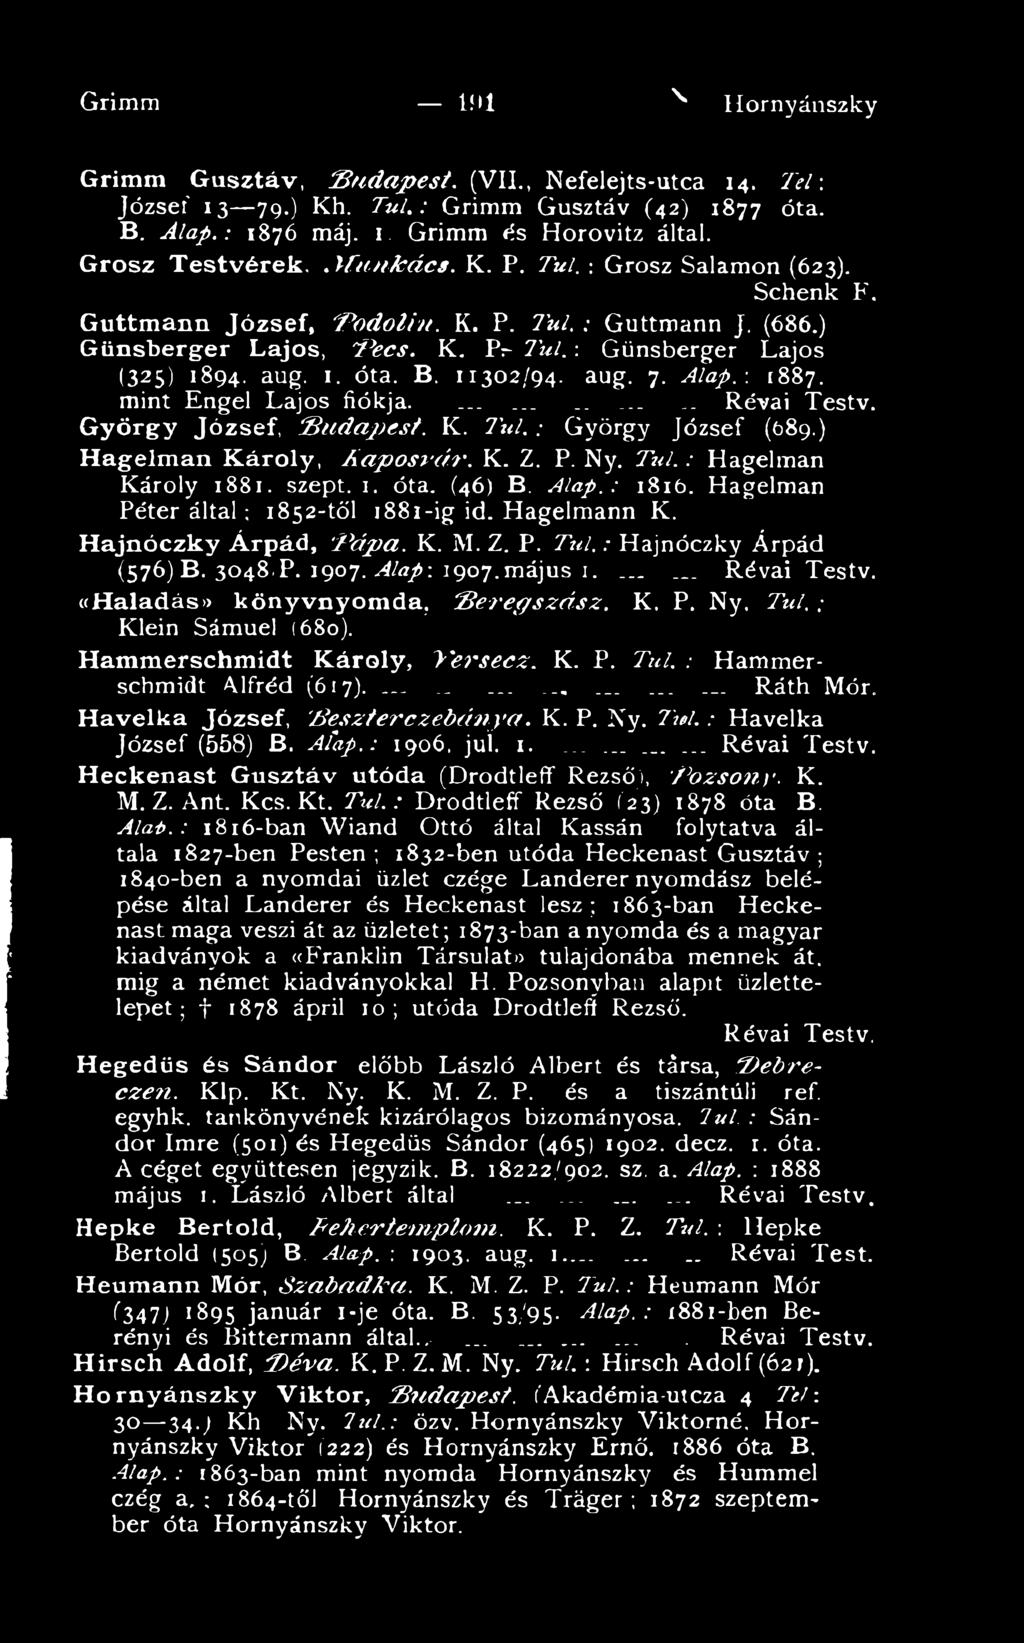 Z. P. T ú l.: Hajnóczky Árpád (576) B. 3048,P. 1907. Alap: 1907.május 1.... «Haladása könyvnyomda, B e r e g s z á s z. K. P. Ny. T úl.: Klein Sámuel (680). Hammerschmidt Károly, V e r s e cz. K. P. Tűt.